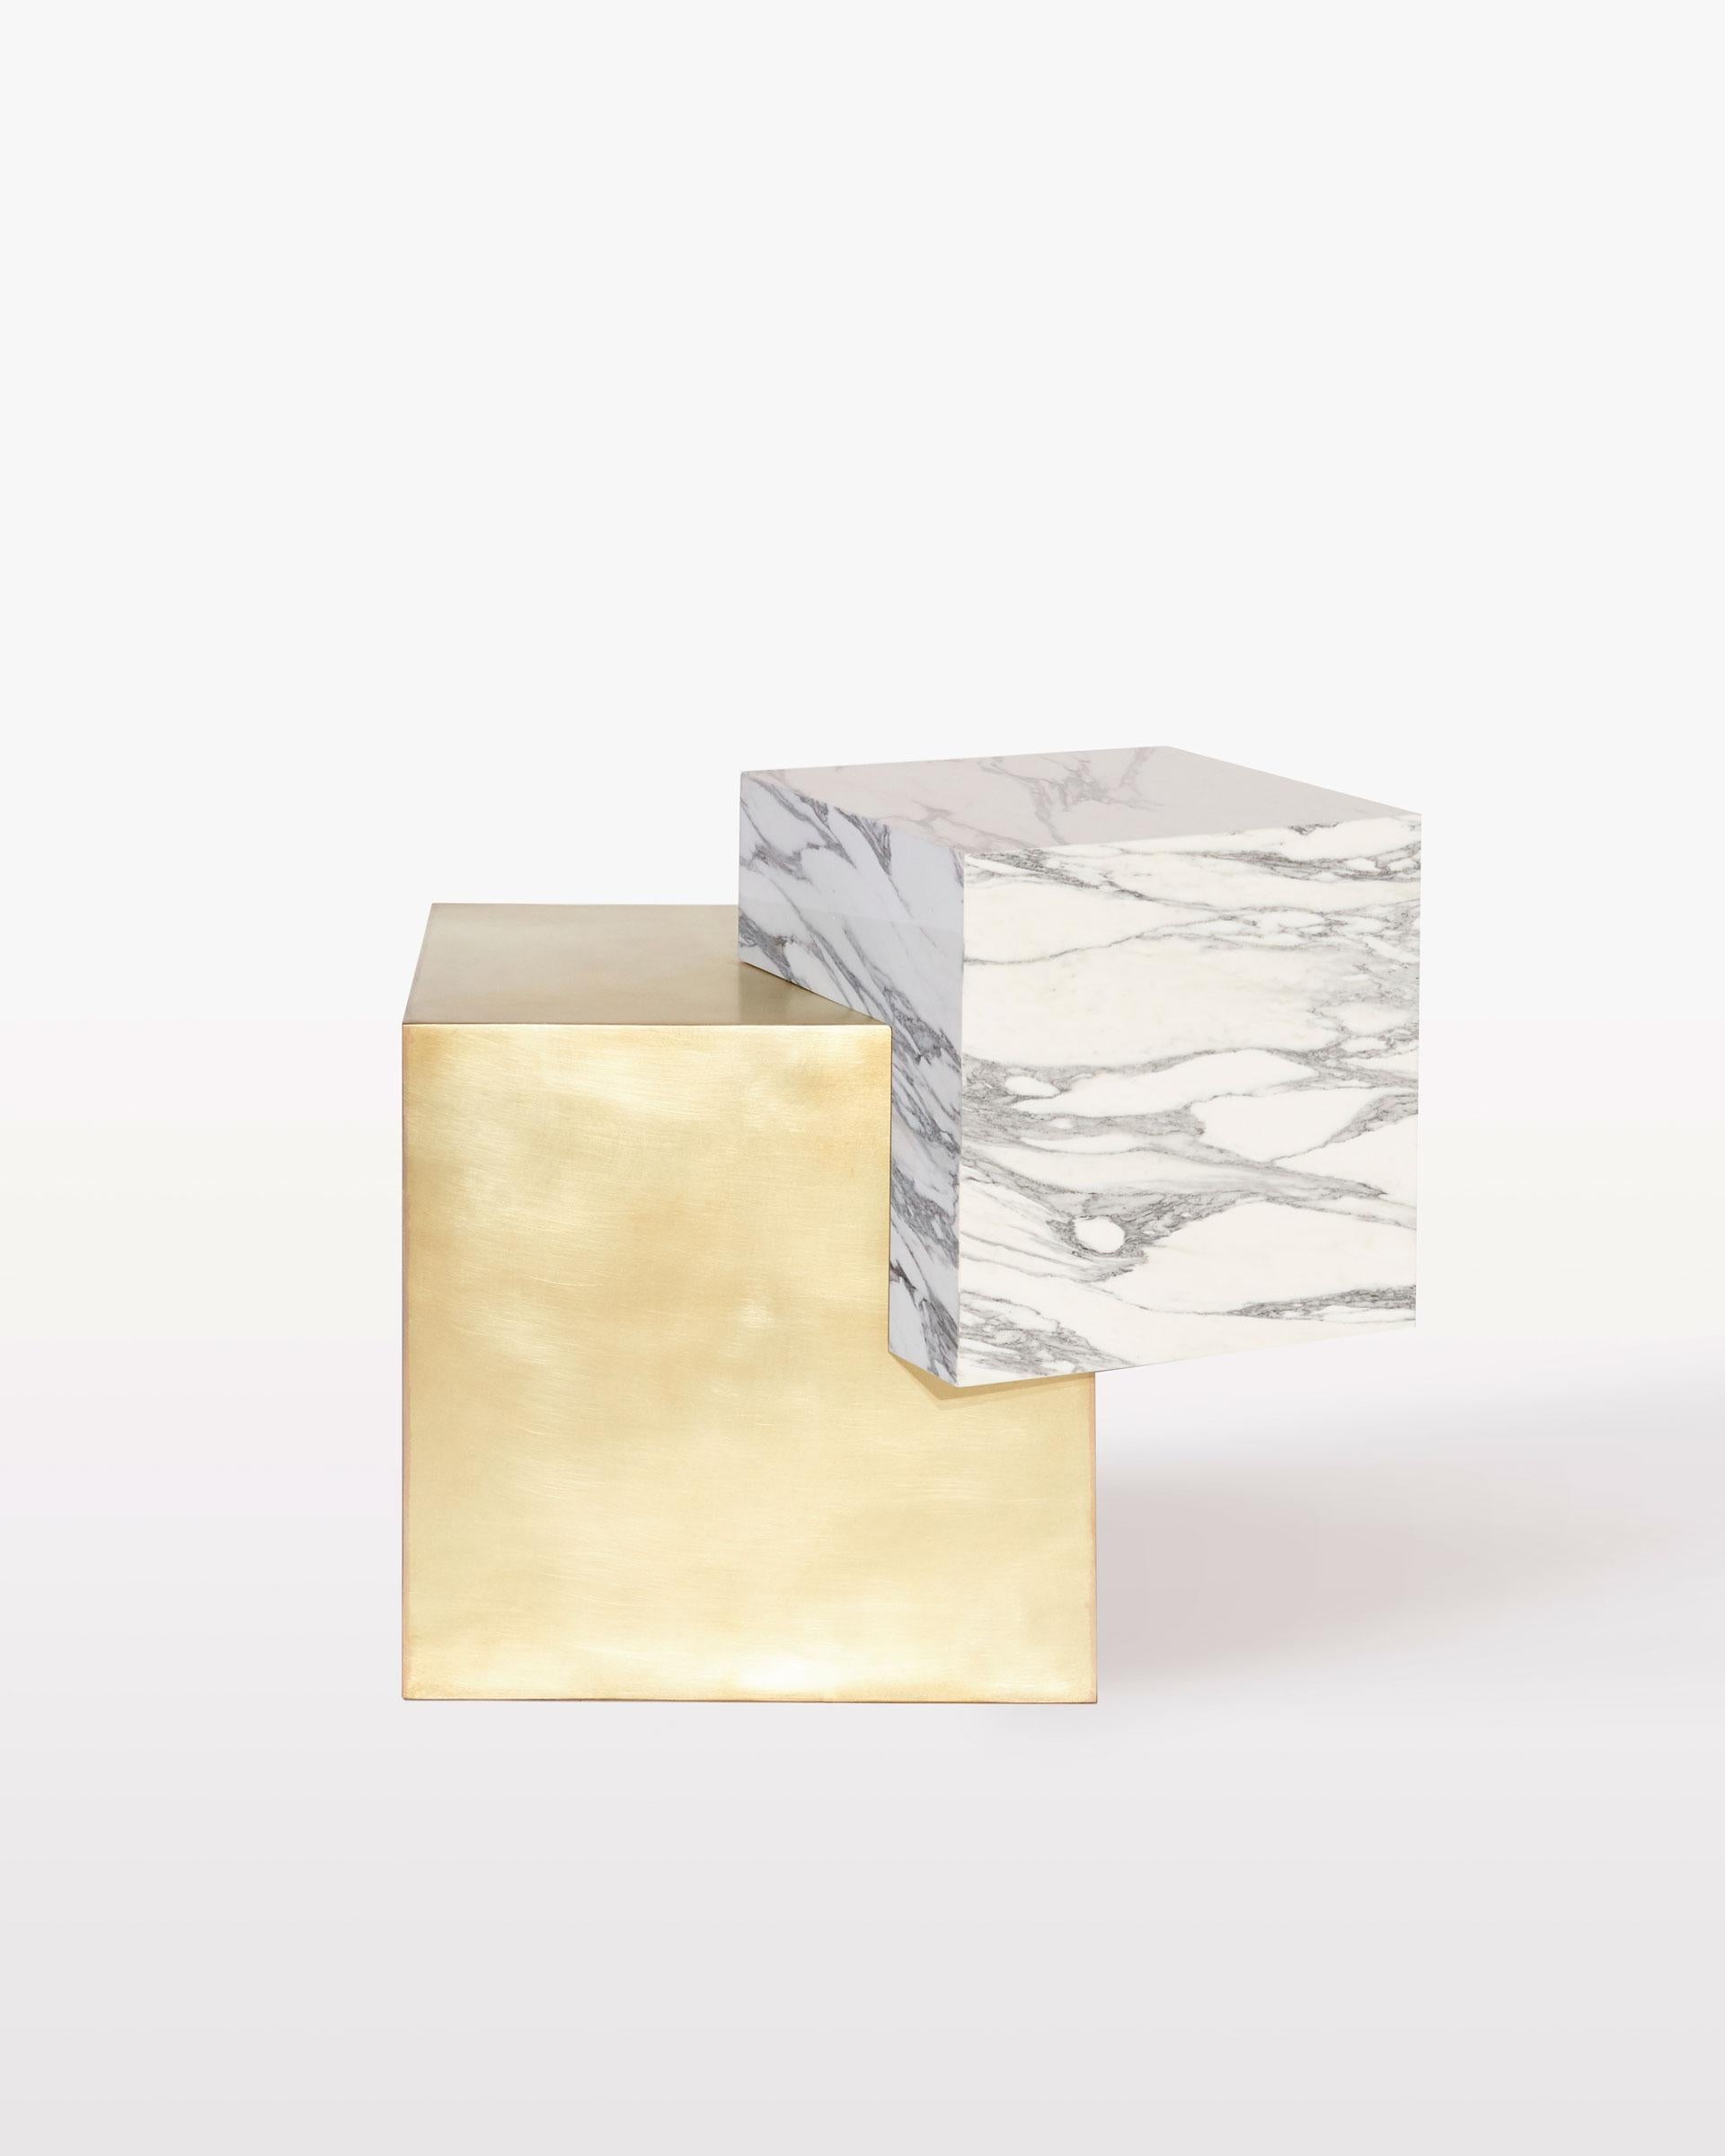 La table d'appoint askew coexist est une exploration de l'équilibre, des matériaux et de l'harmonie. Les matériaux se composent d'une base cubique en laiton brossé et d'un plateau cubique en marbre.

La table présente un cube de marbre équilibré à